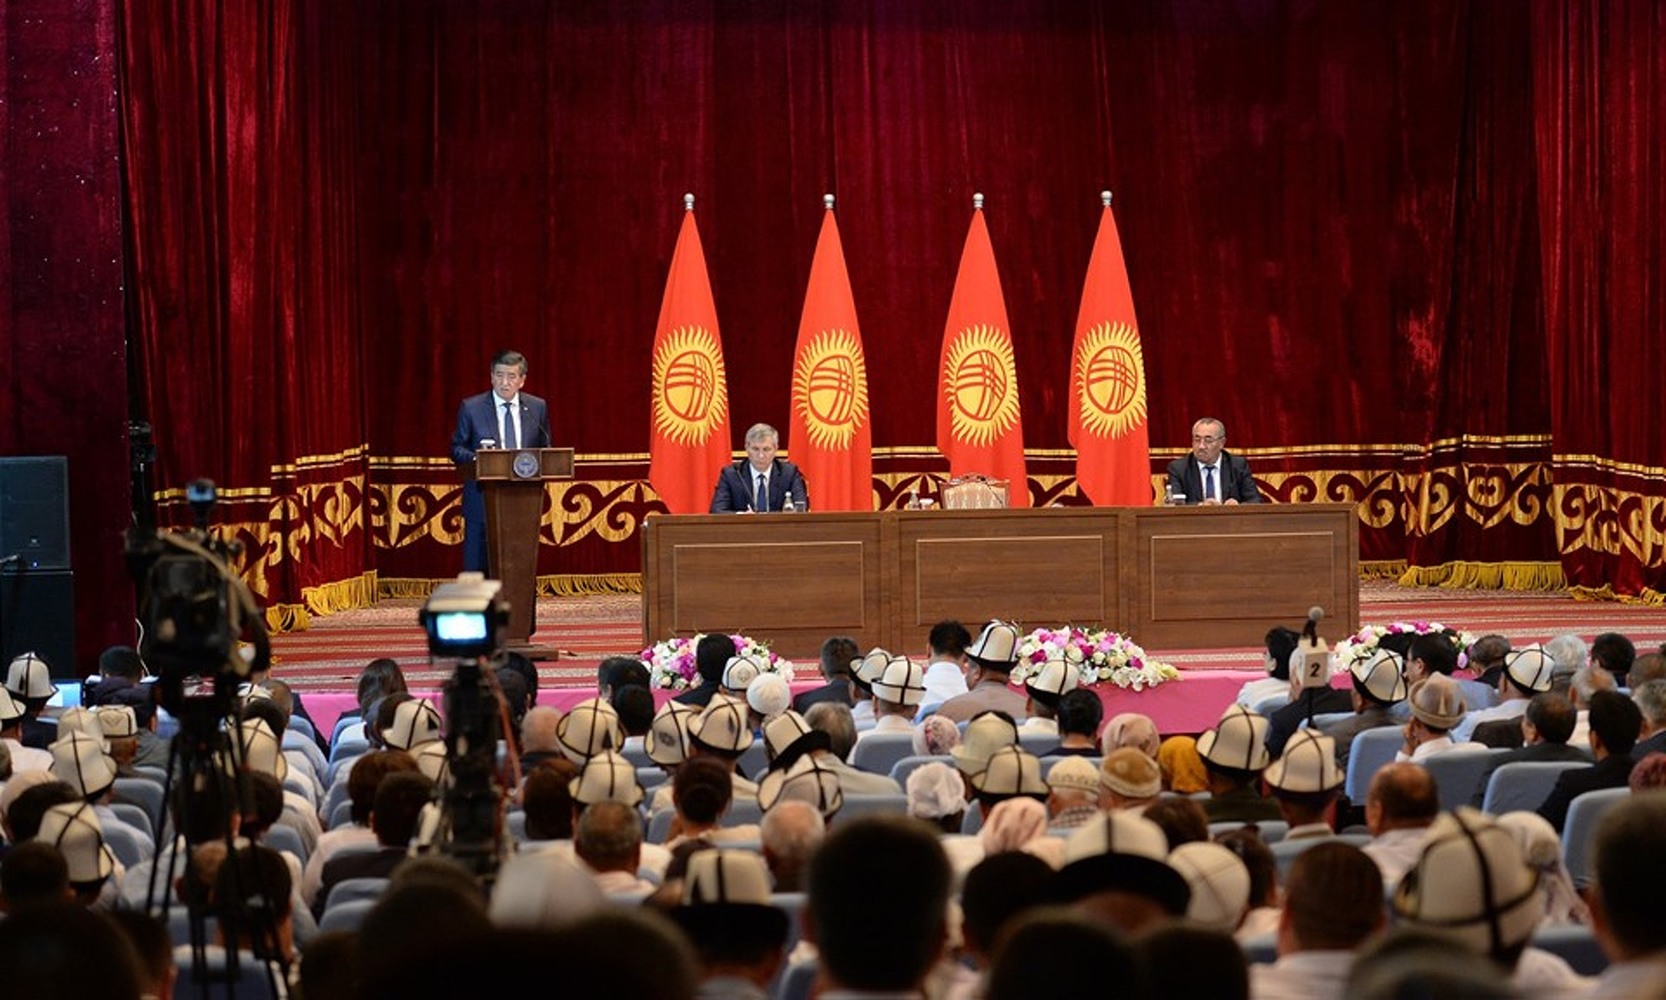 Скоро Кыргызстан посетит президент Таджикистана Рахмон, стороны обсудят пограничные вопросы, - Жээнбеков — Today.kg